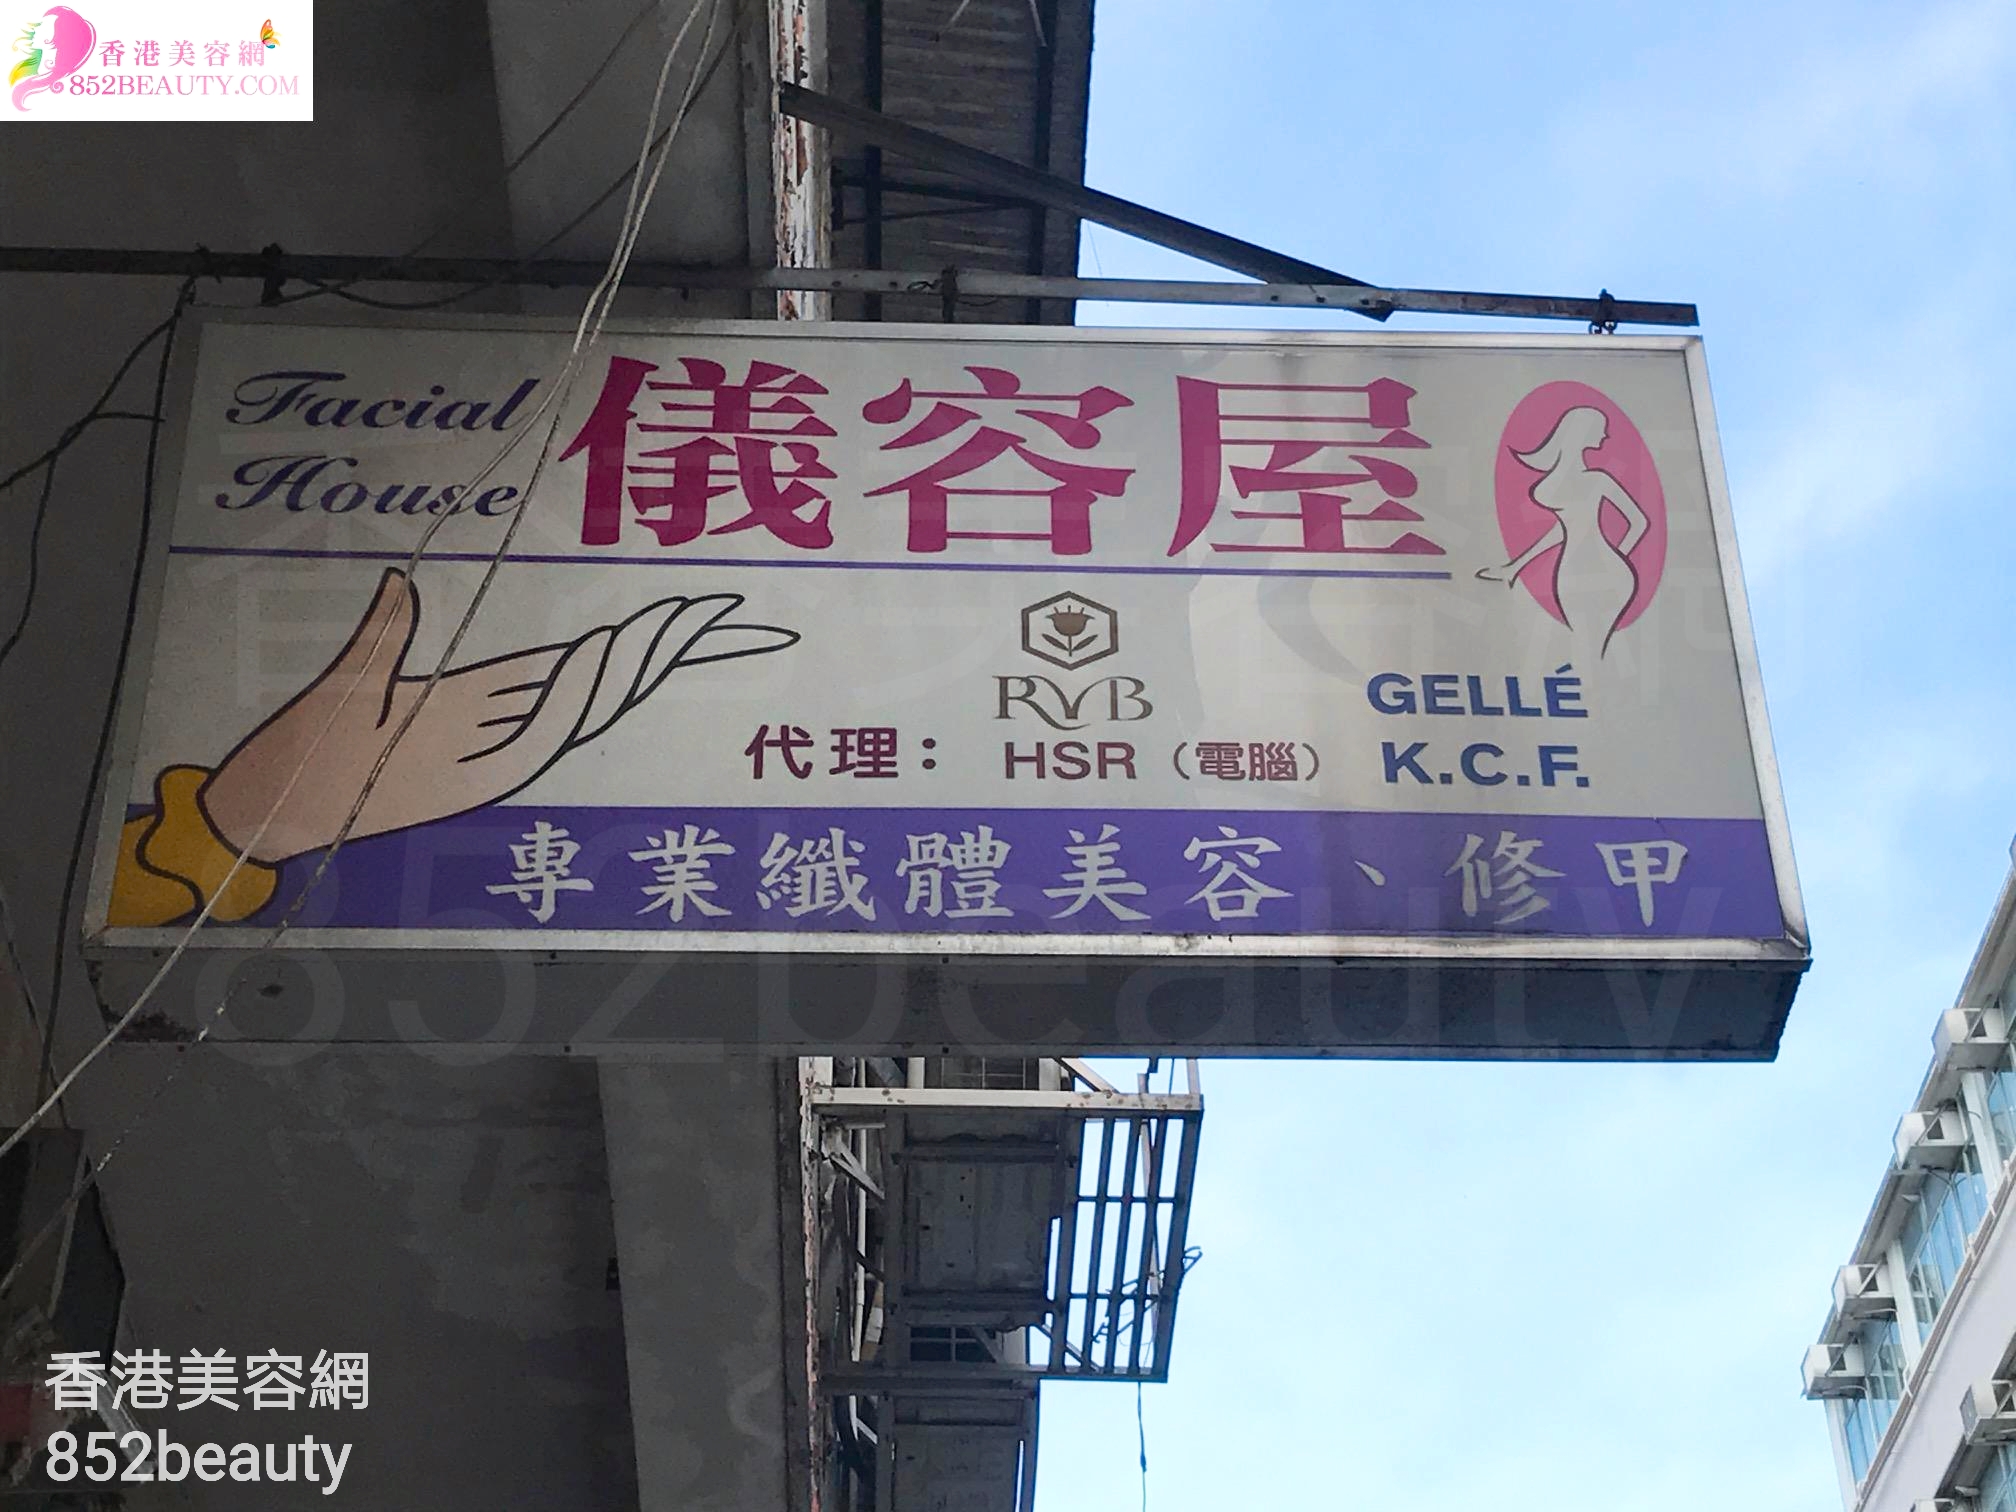 香港美容網 Hong Kong Beauty Salon 美容院 / 美容師: 儀容屋 Facial House